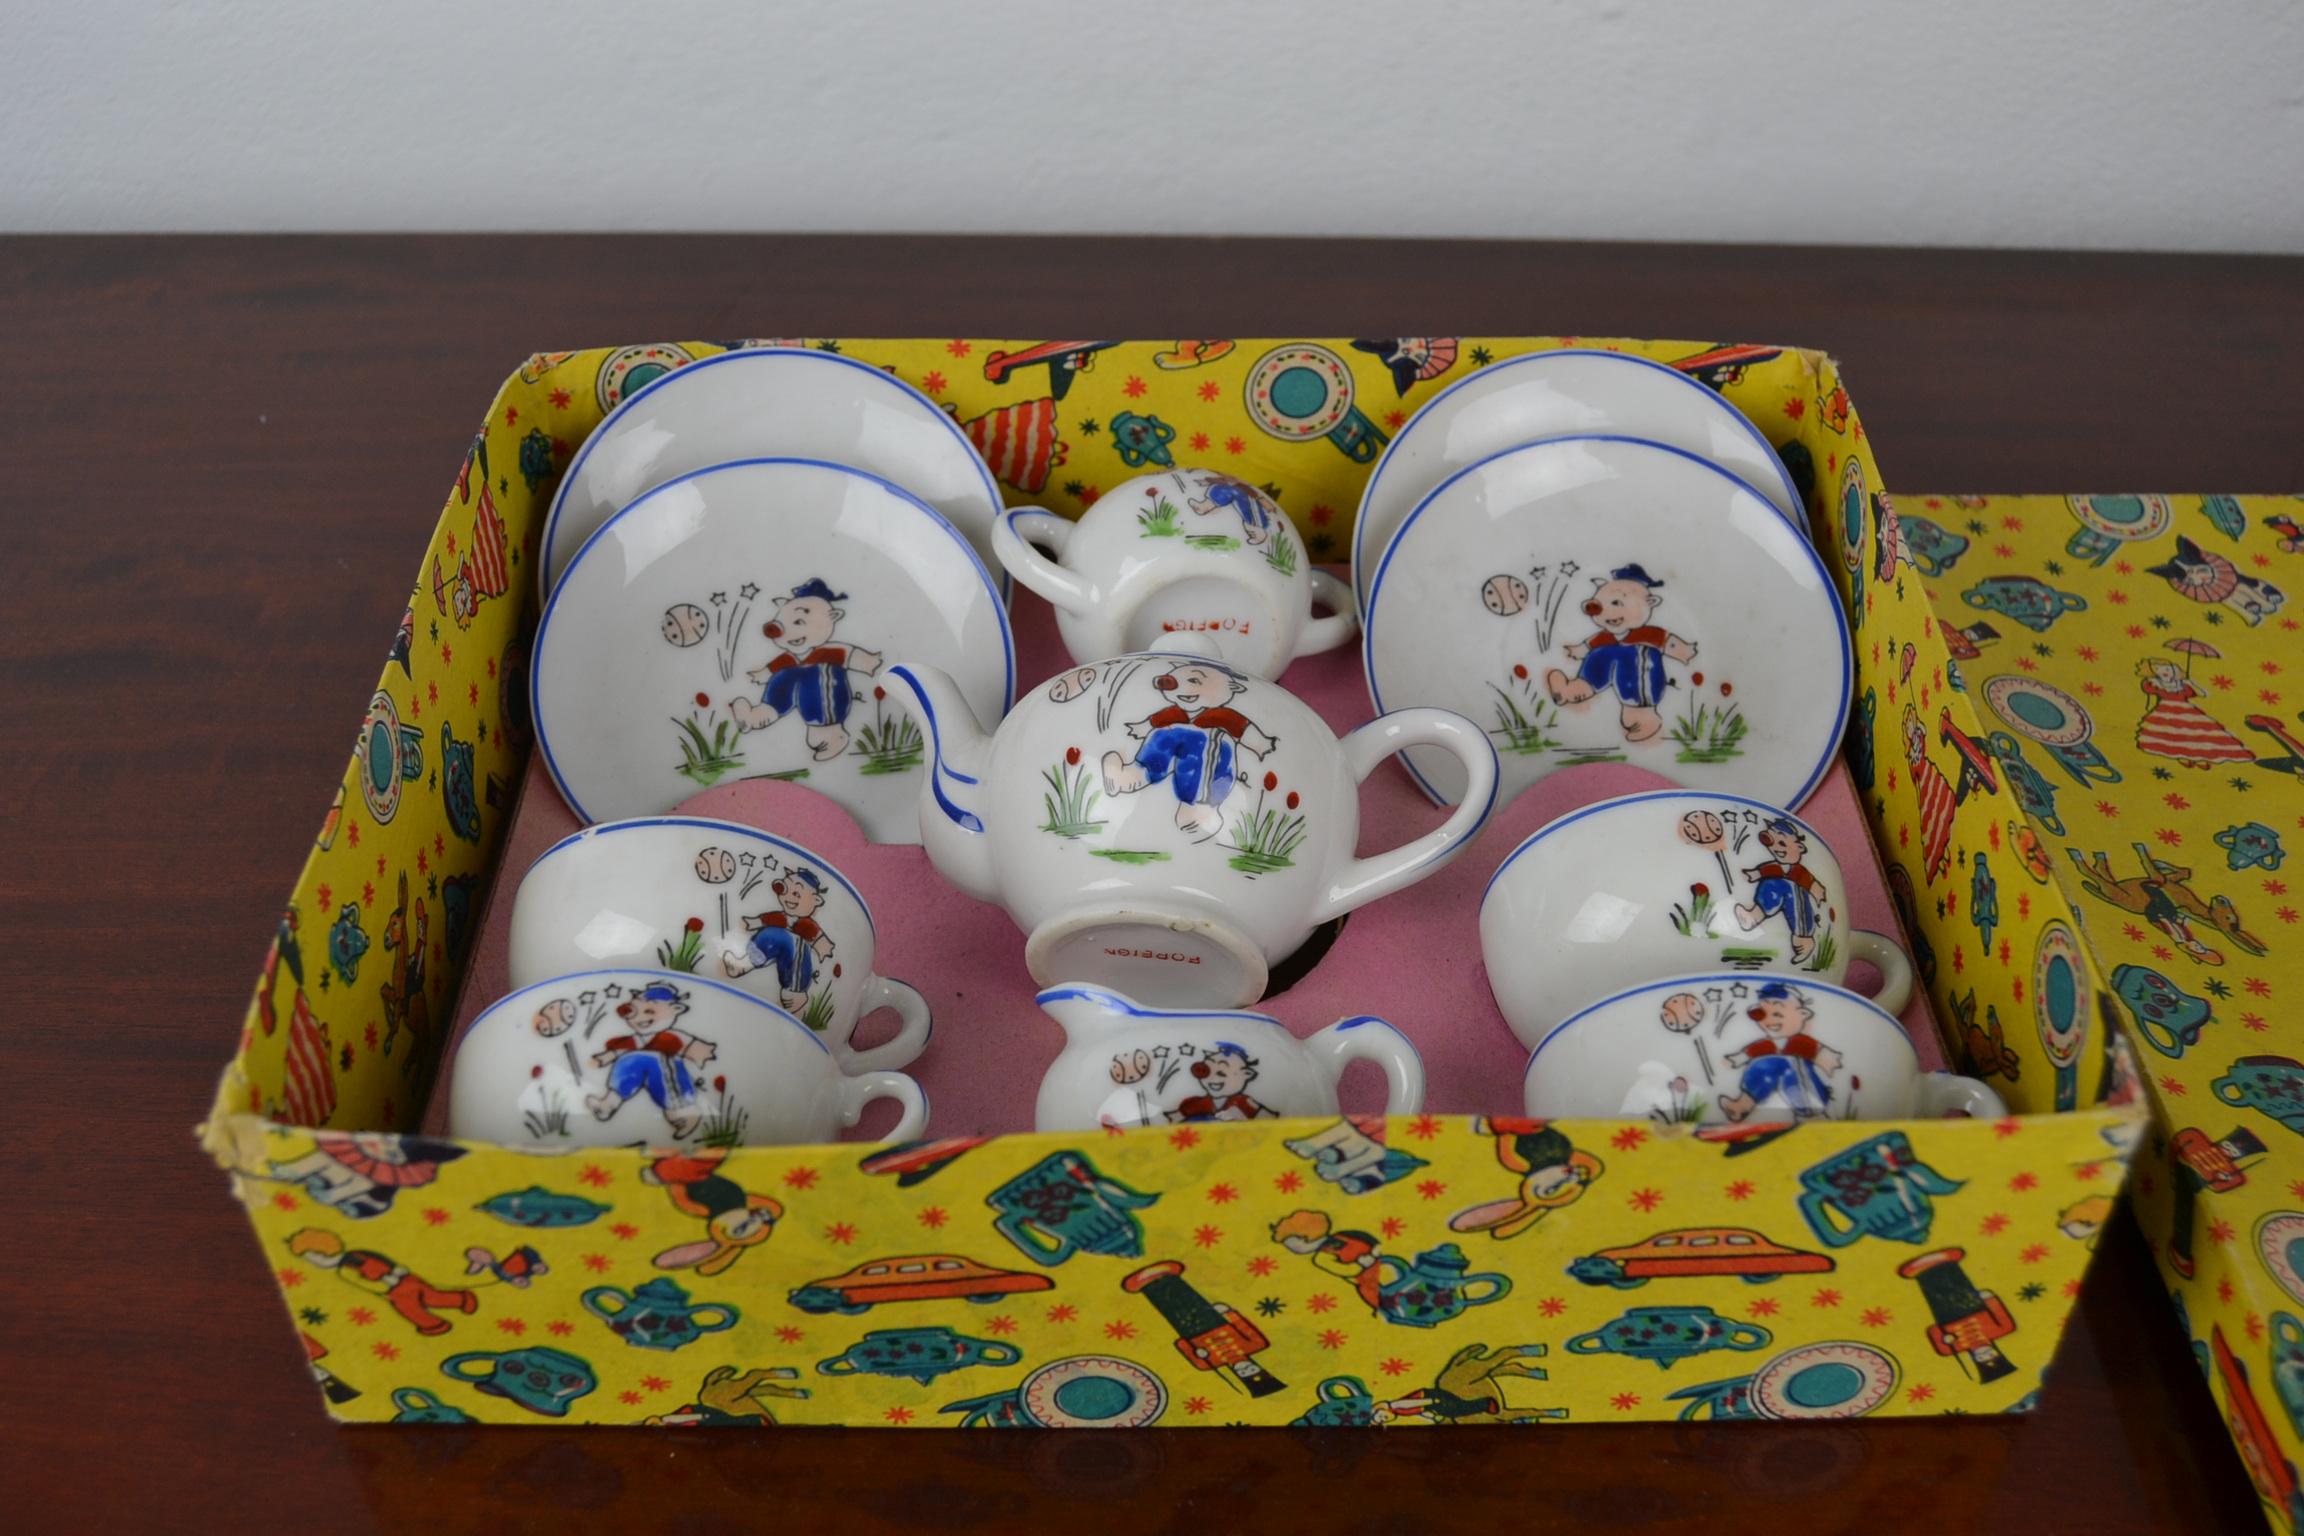 Japanese Porcelain Tea Set for Children, Pig Toy Tea Set, Foreign, Made in Japan